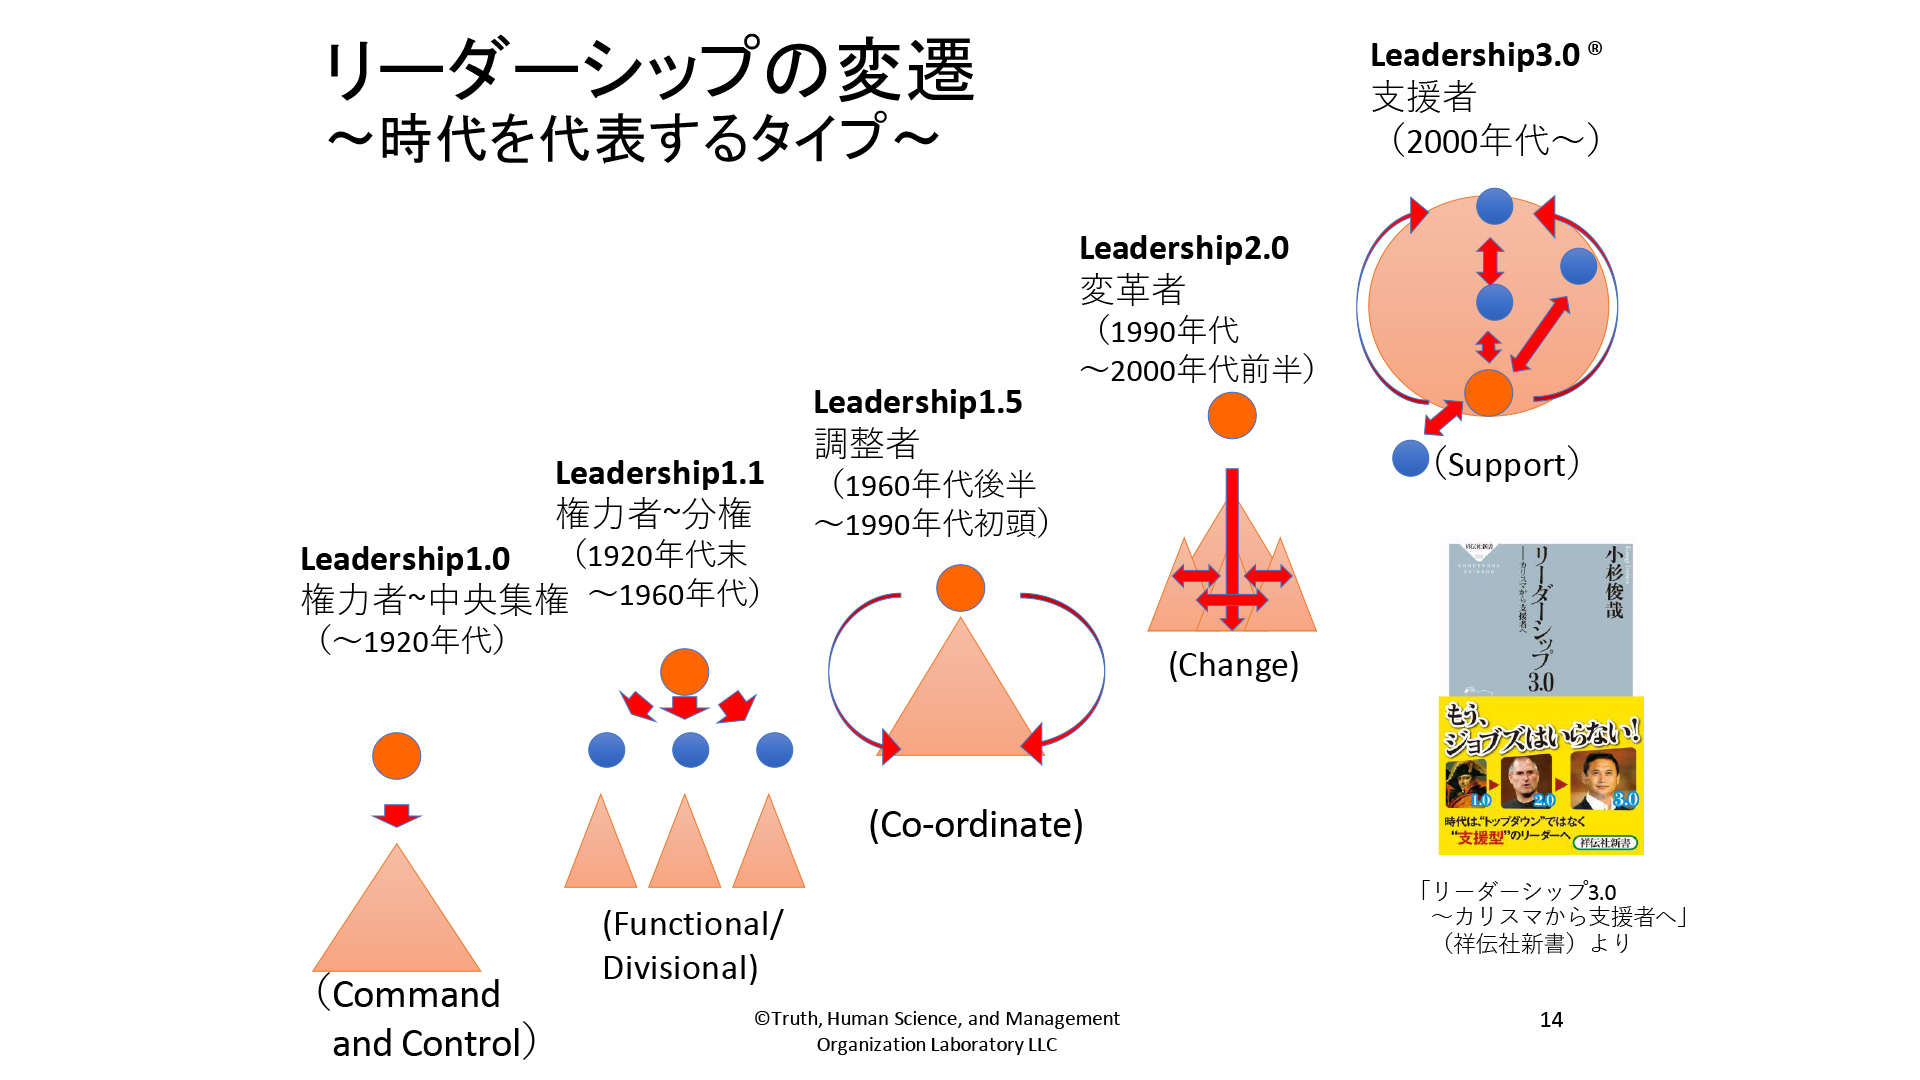 シゴきに耐えて育った管理職は、自分も部下を「管理」したがる　日本型から支援型へ、リーダーシップの変遷が容易でないワケ